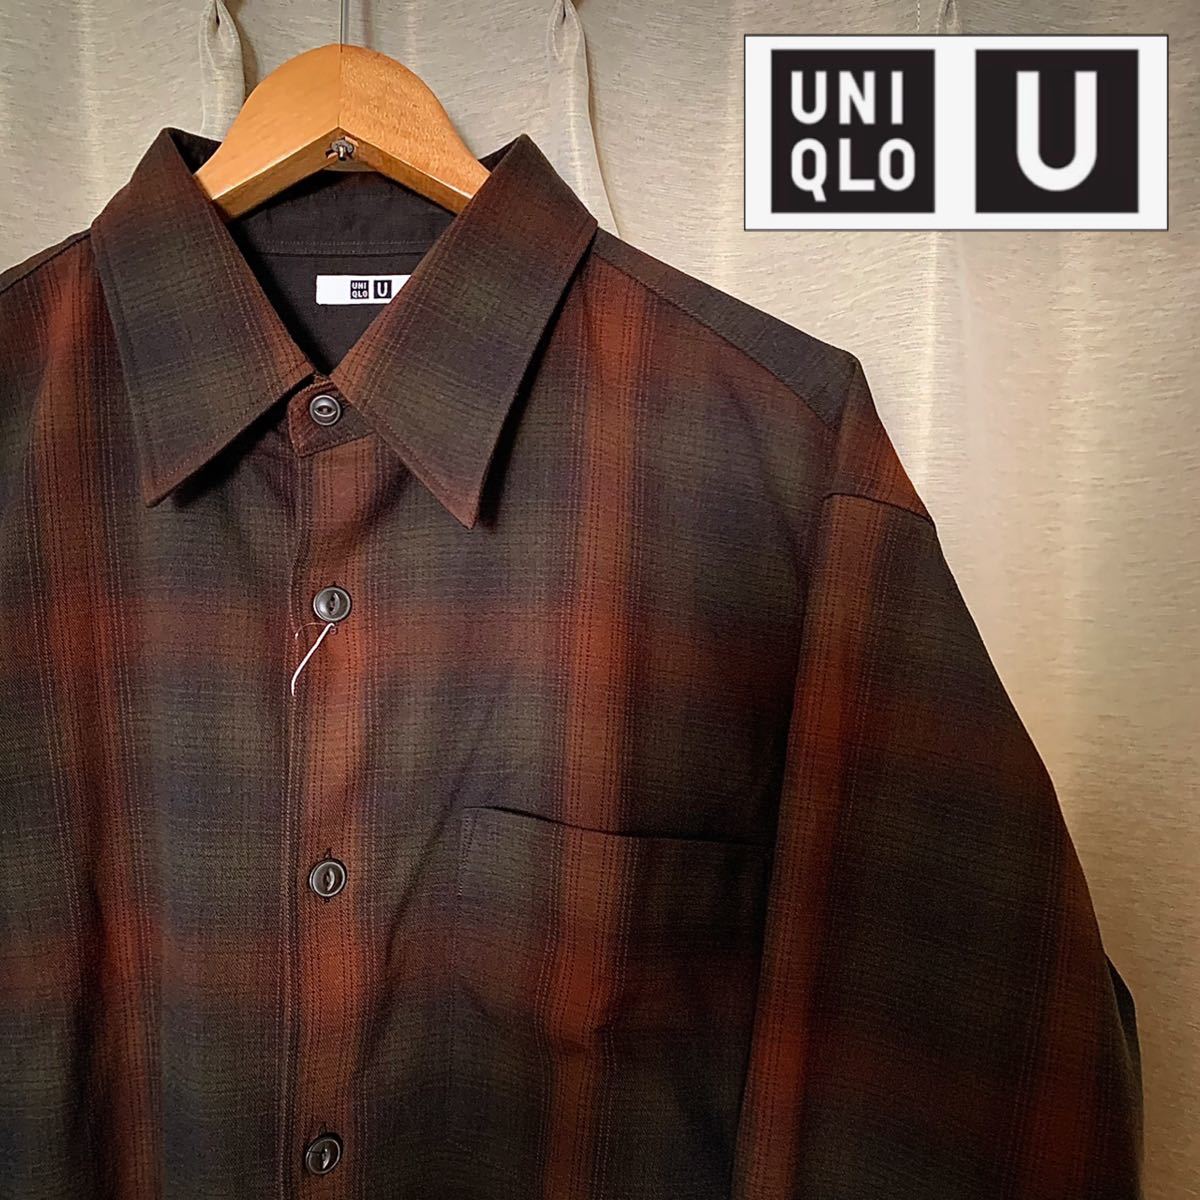 ユニクロU ヘビーフランネル オーバーサイズシャツ オリーブ Lサイズ 新品